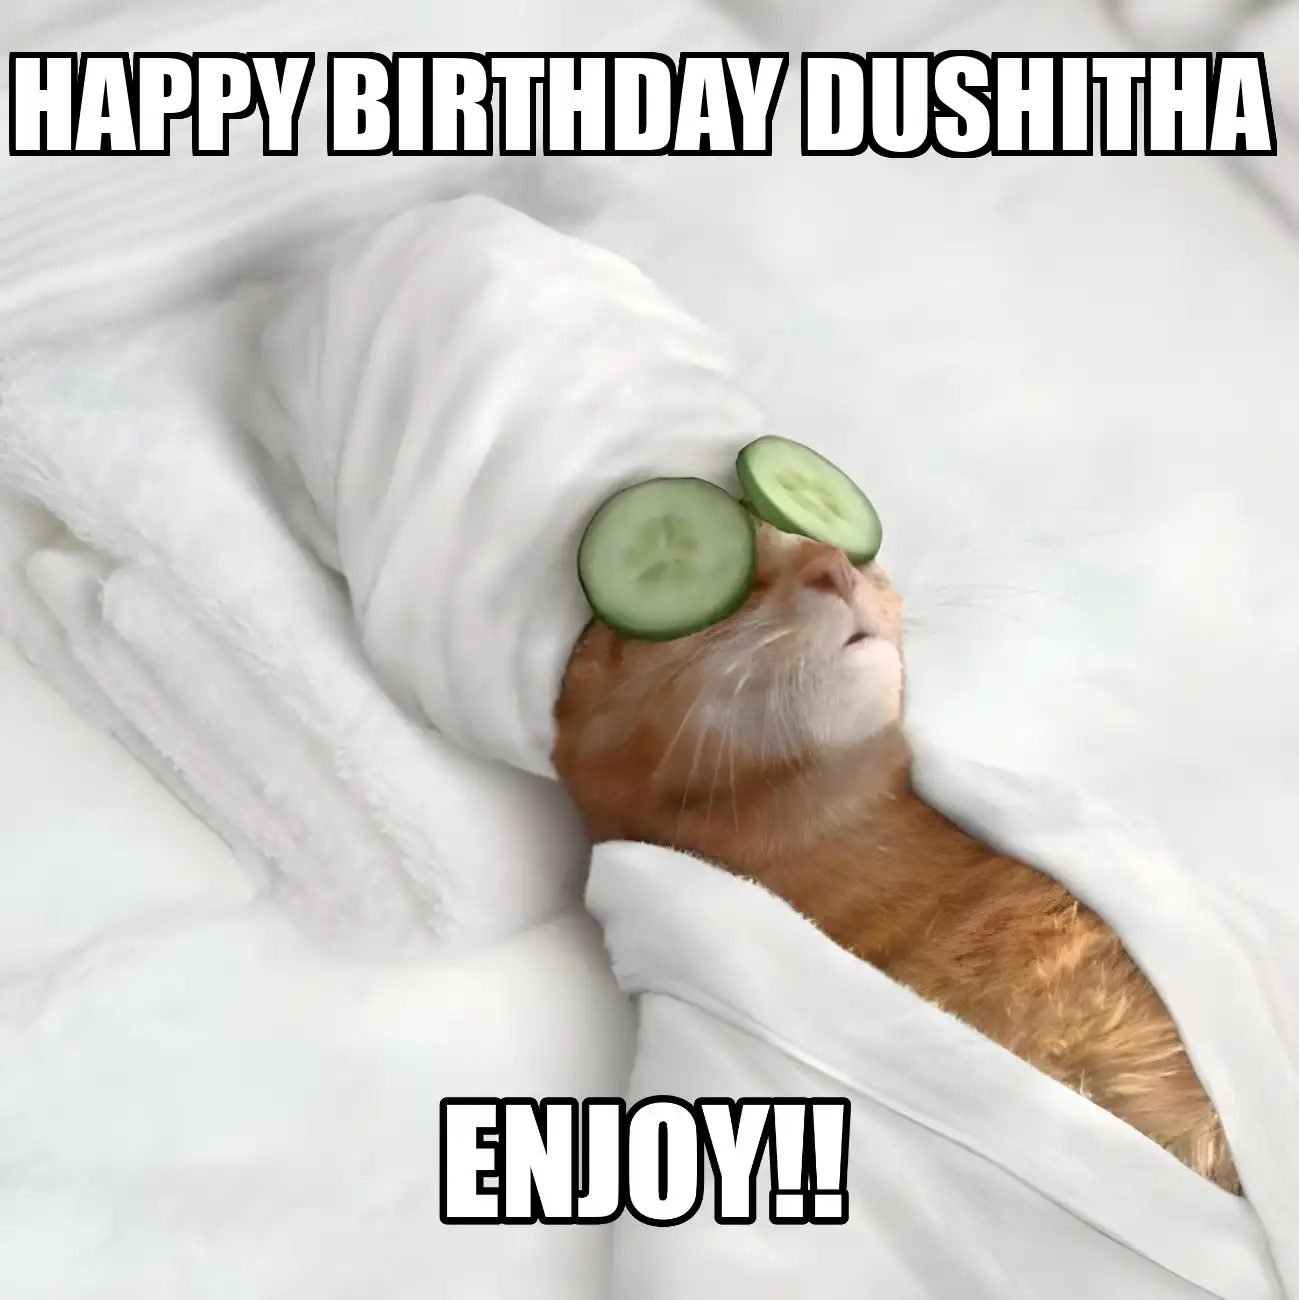 Happy Birthday Dushitha Enjoy Cat Meme